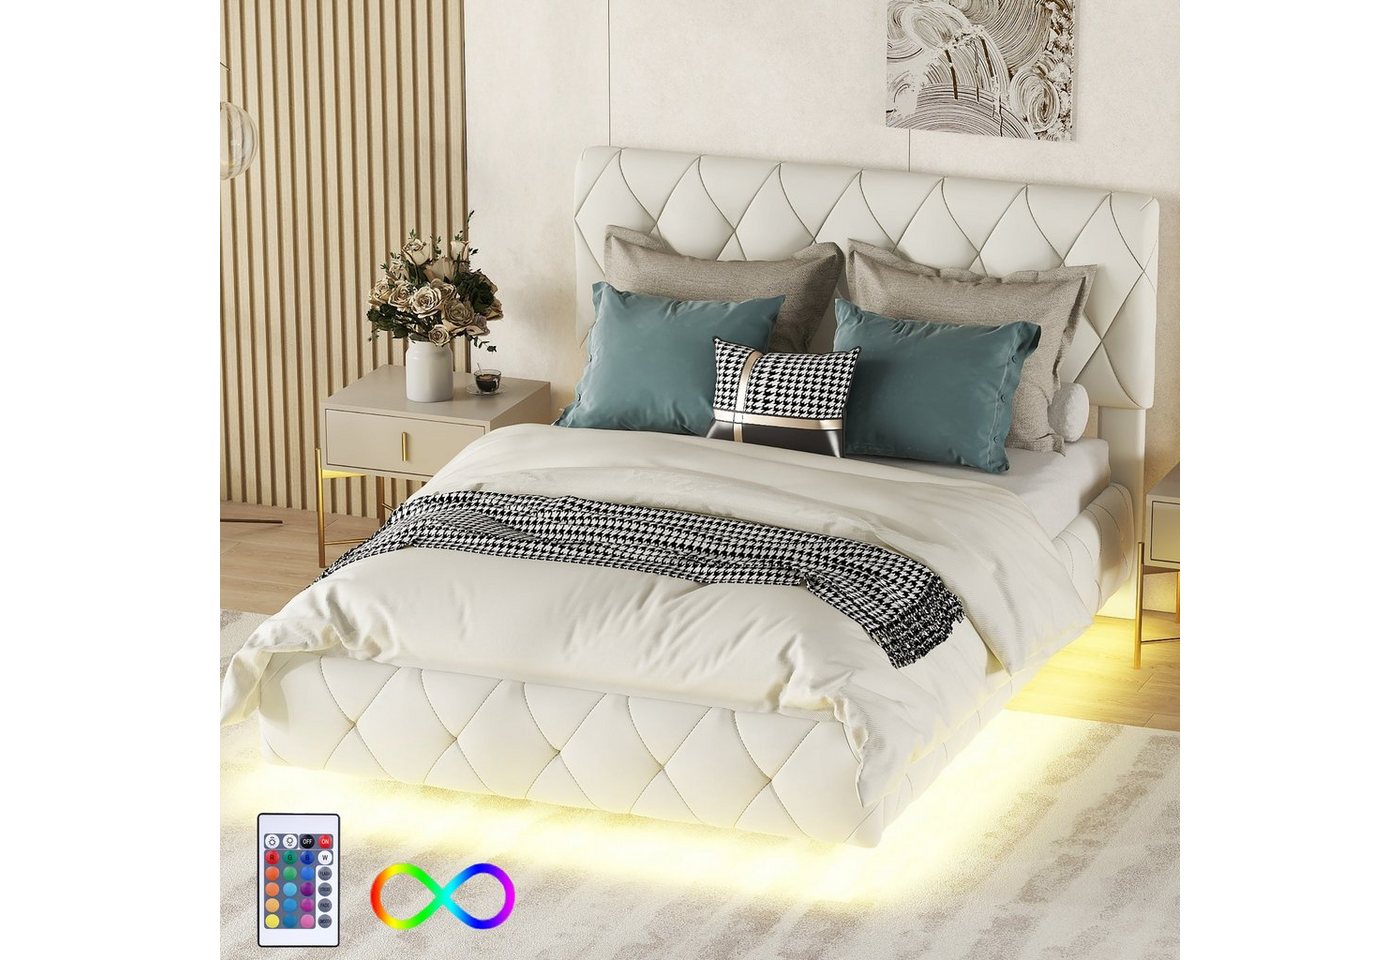 Ulife Polsterbett Gästebett Bett Doppelbett Schwebebette PU-Material, mit Lichtleisten, 140 x 200cm von Ulife